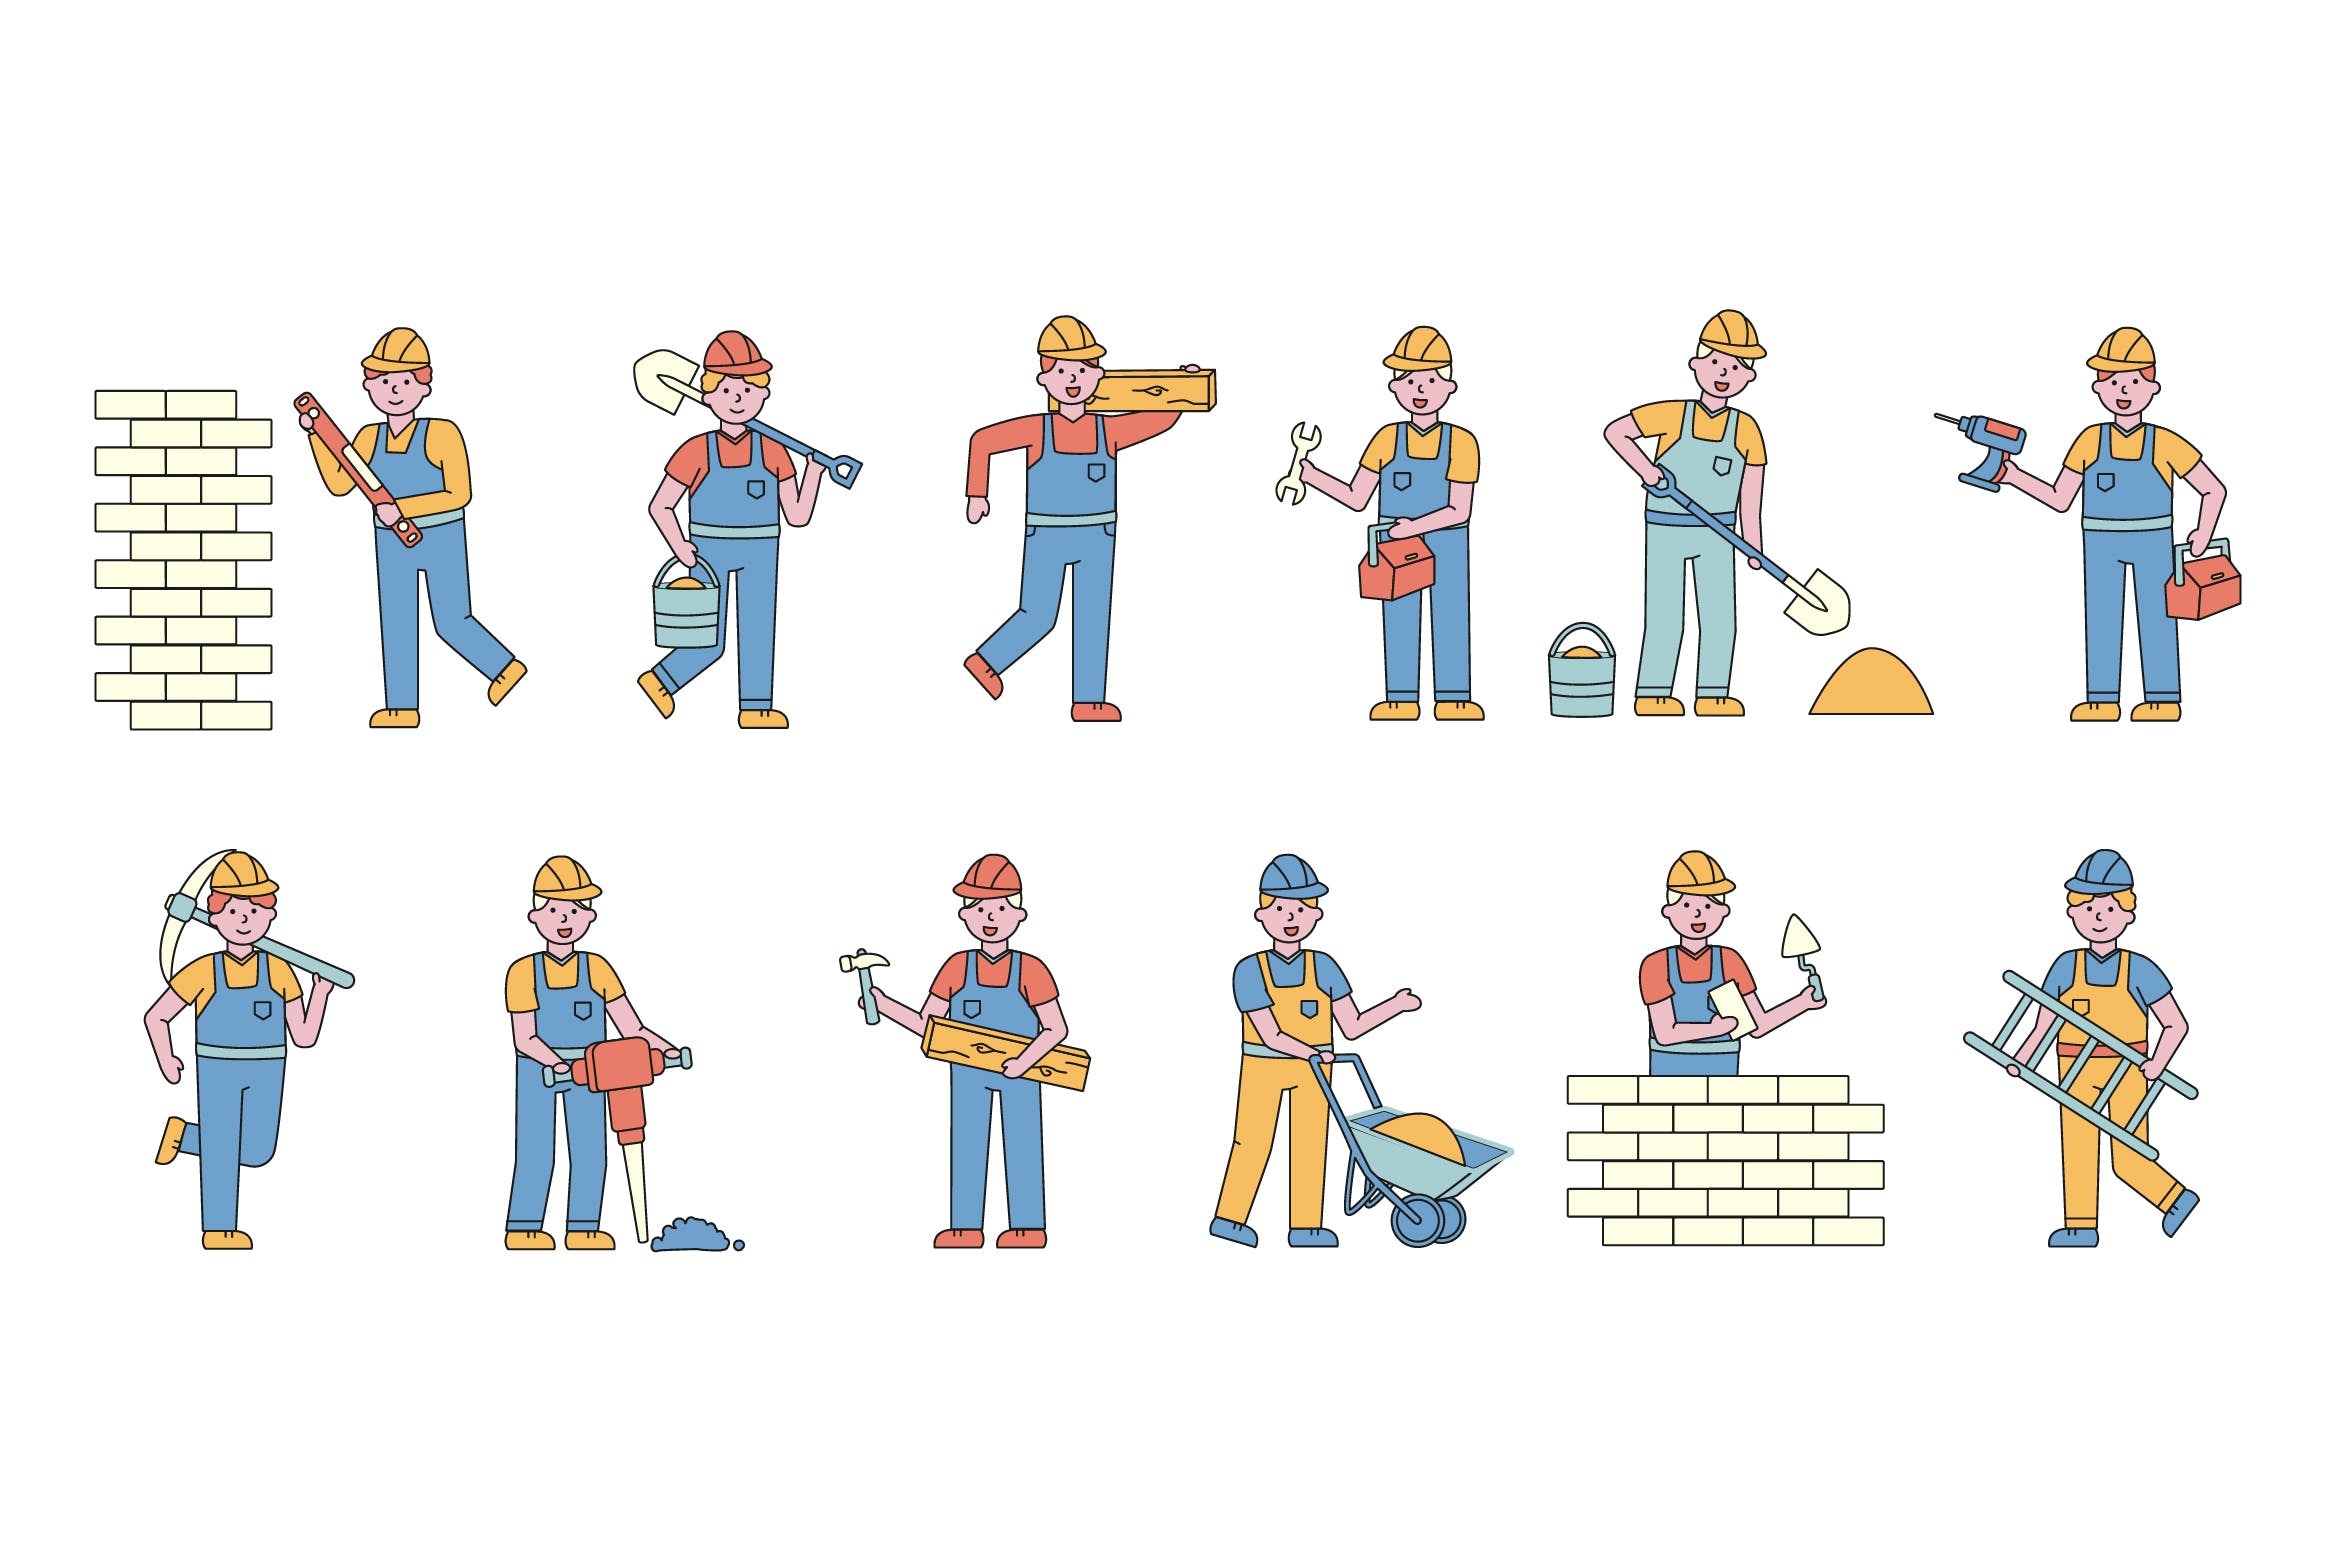 建筑工人人物形象线条艺术矢量插画16设计网精选素材 Builders Lineart People Character Collection插图